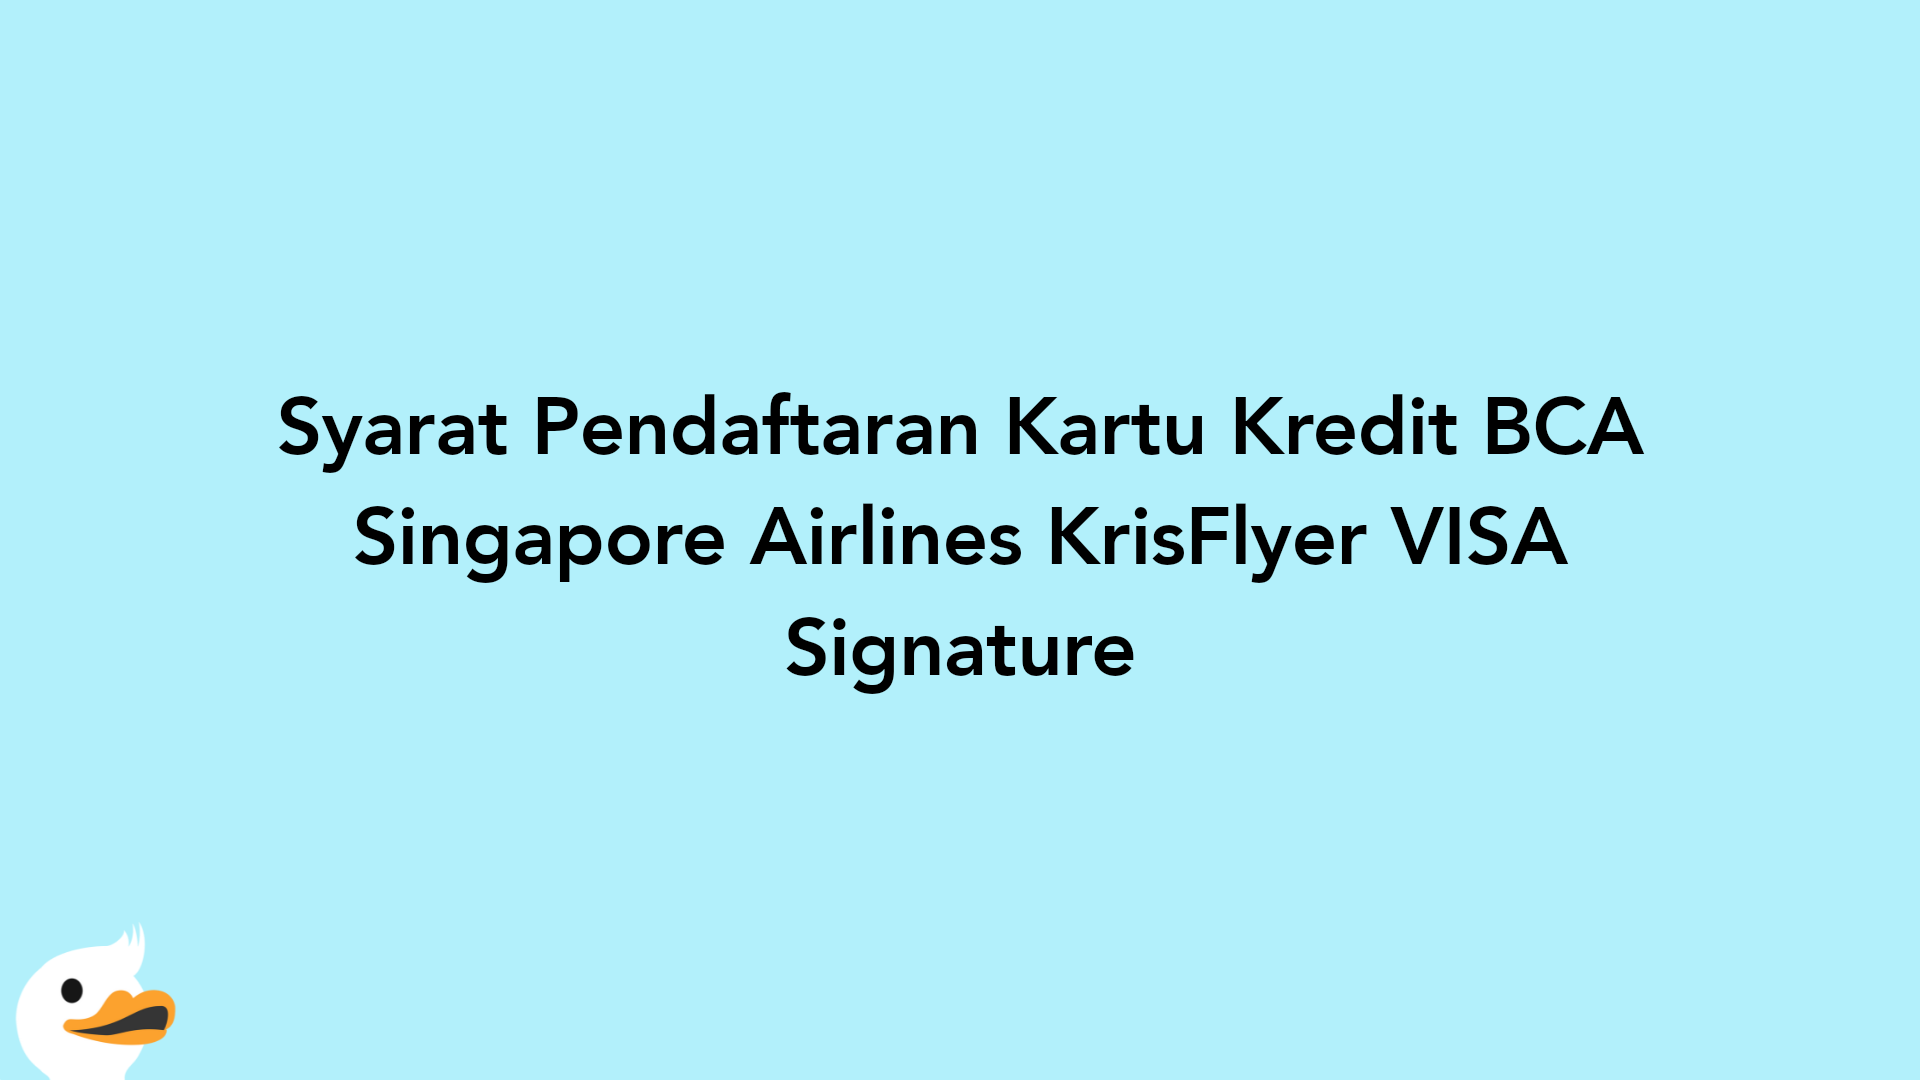 Syarat Pendaftaran Kartu Kredit BCA Singapore Airlines KrisFlyer VISA Signature